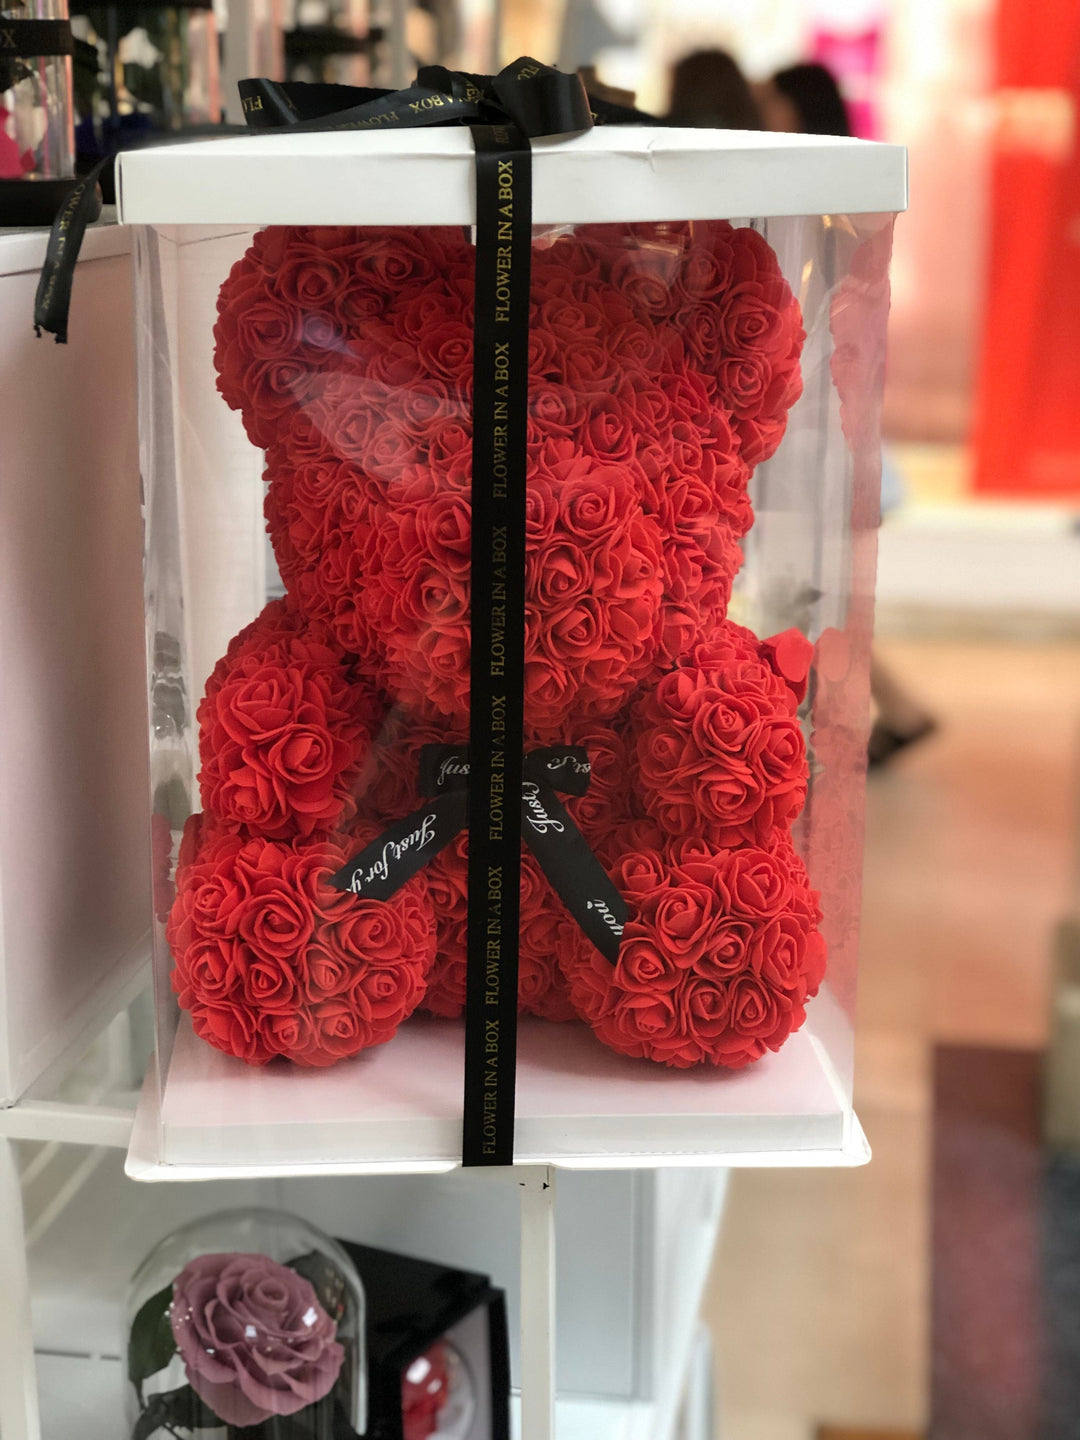 Rose Teddy - flower in a box